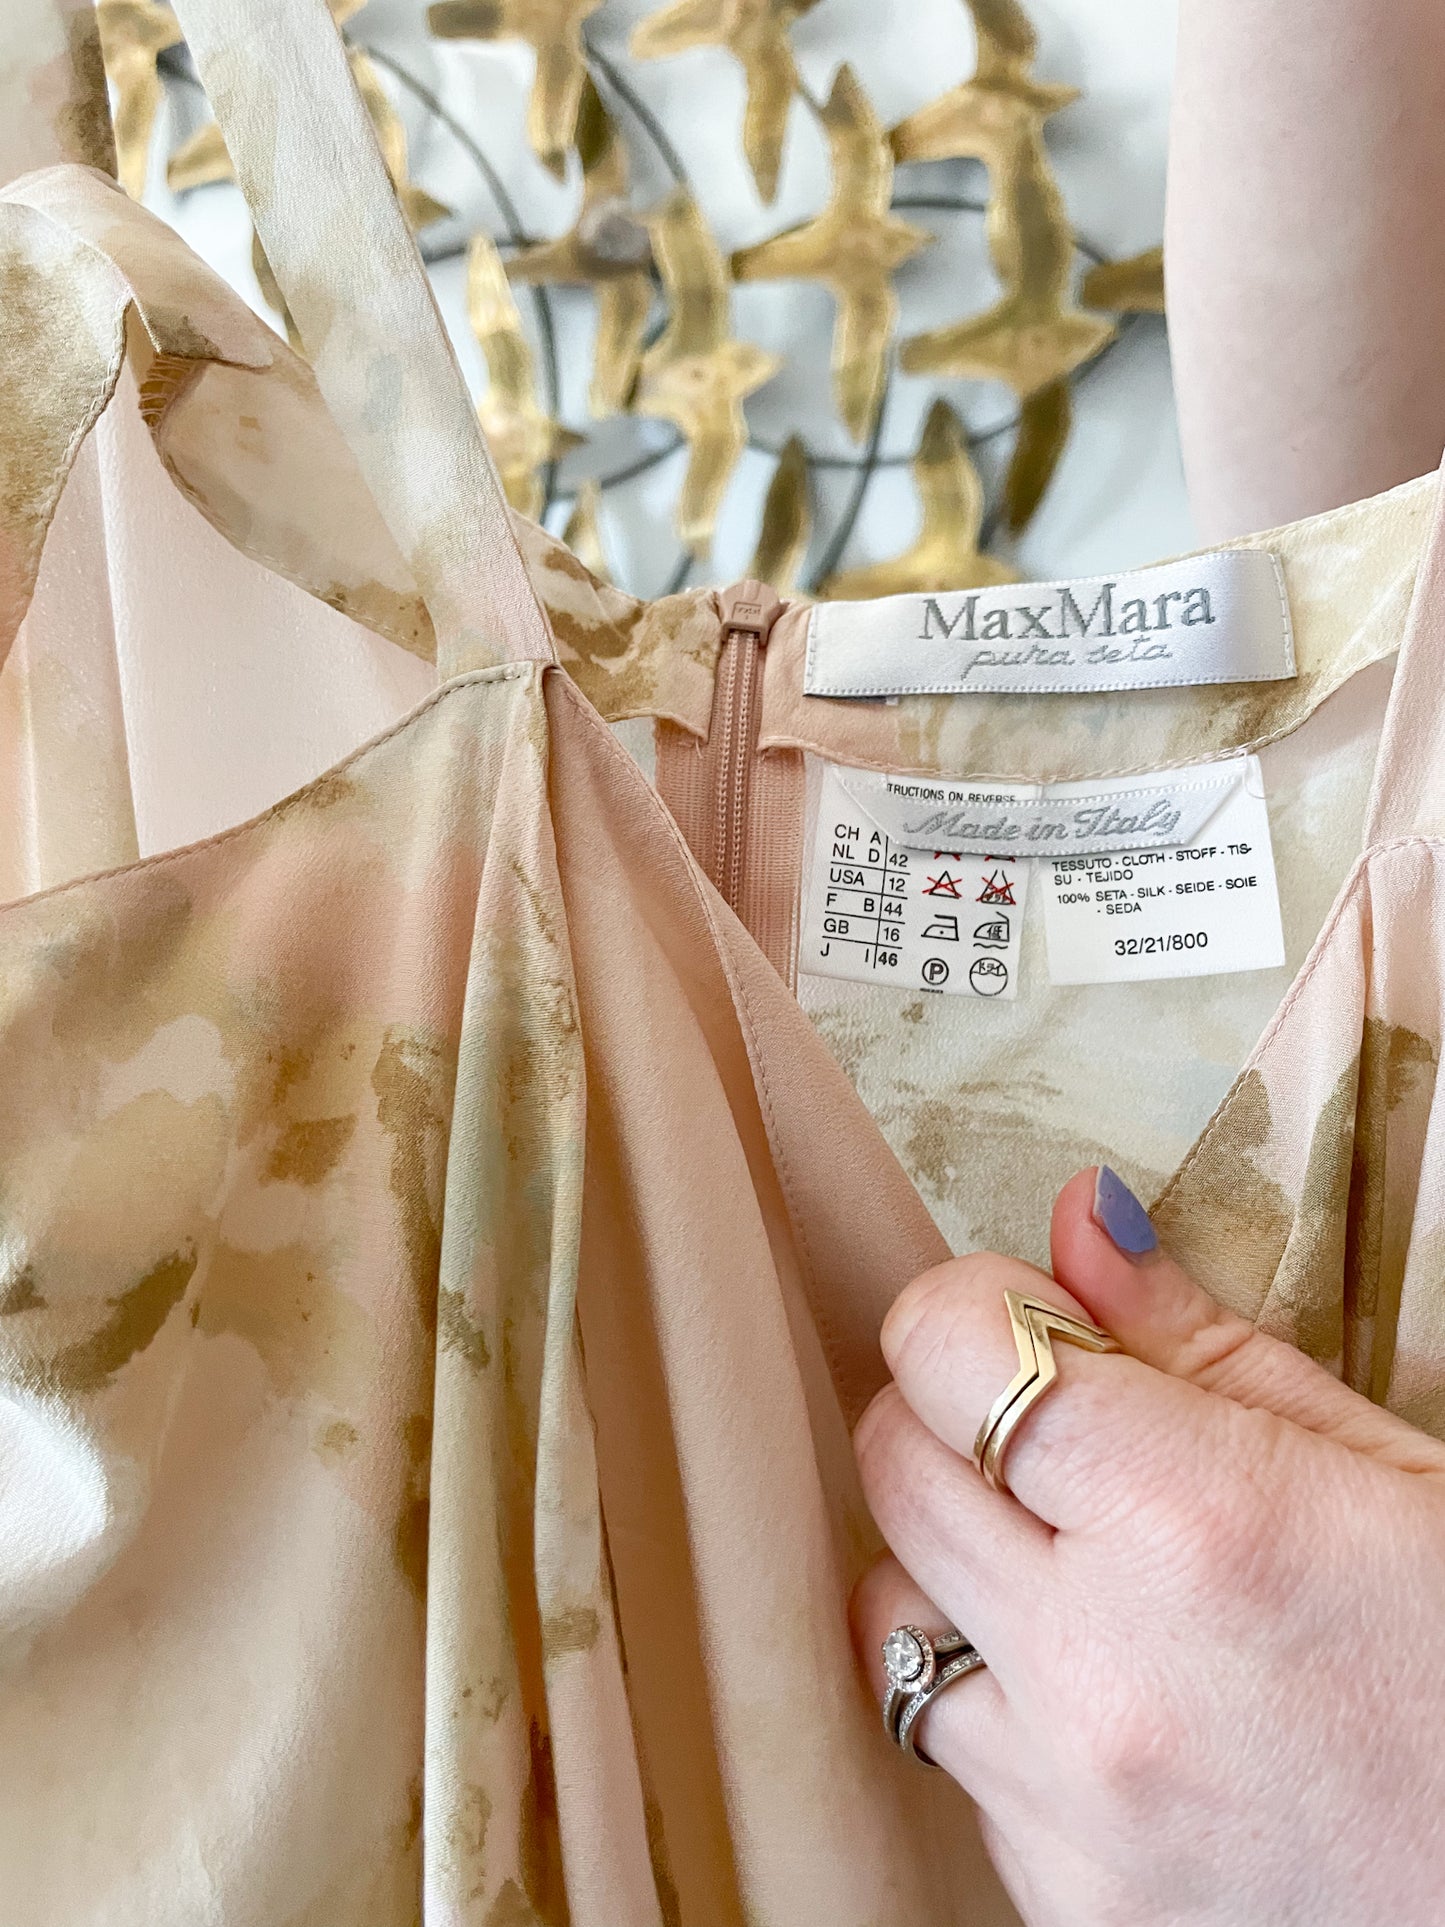 Max Mara Pure Silk Blush Floral Knot Waist Tunic Top - Medium